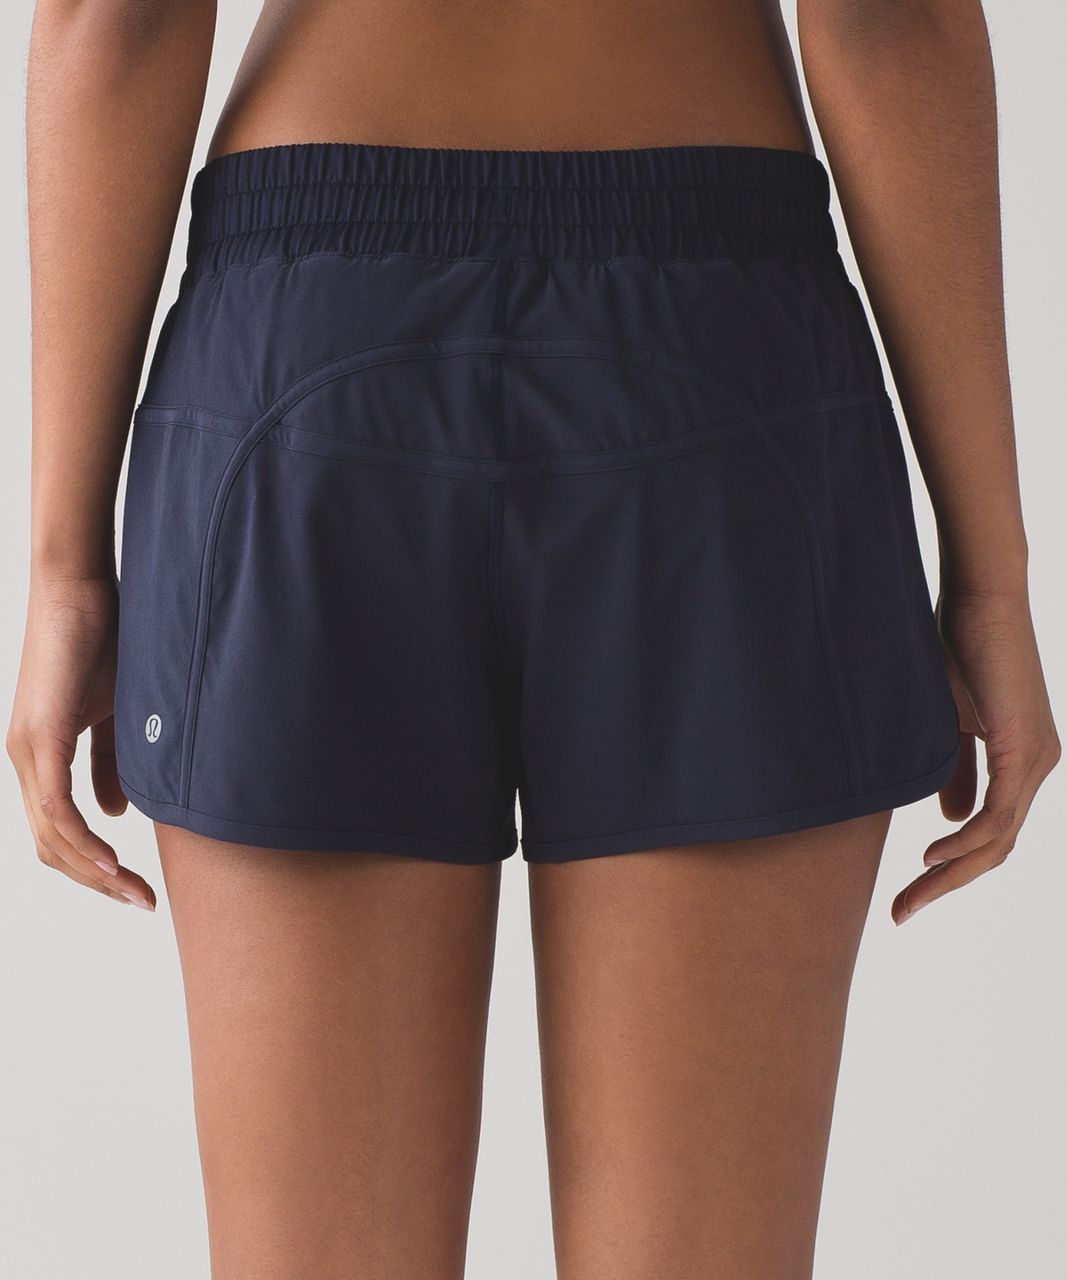 navy lululemon shorts